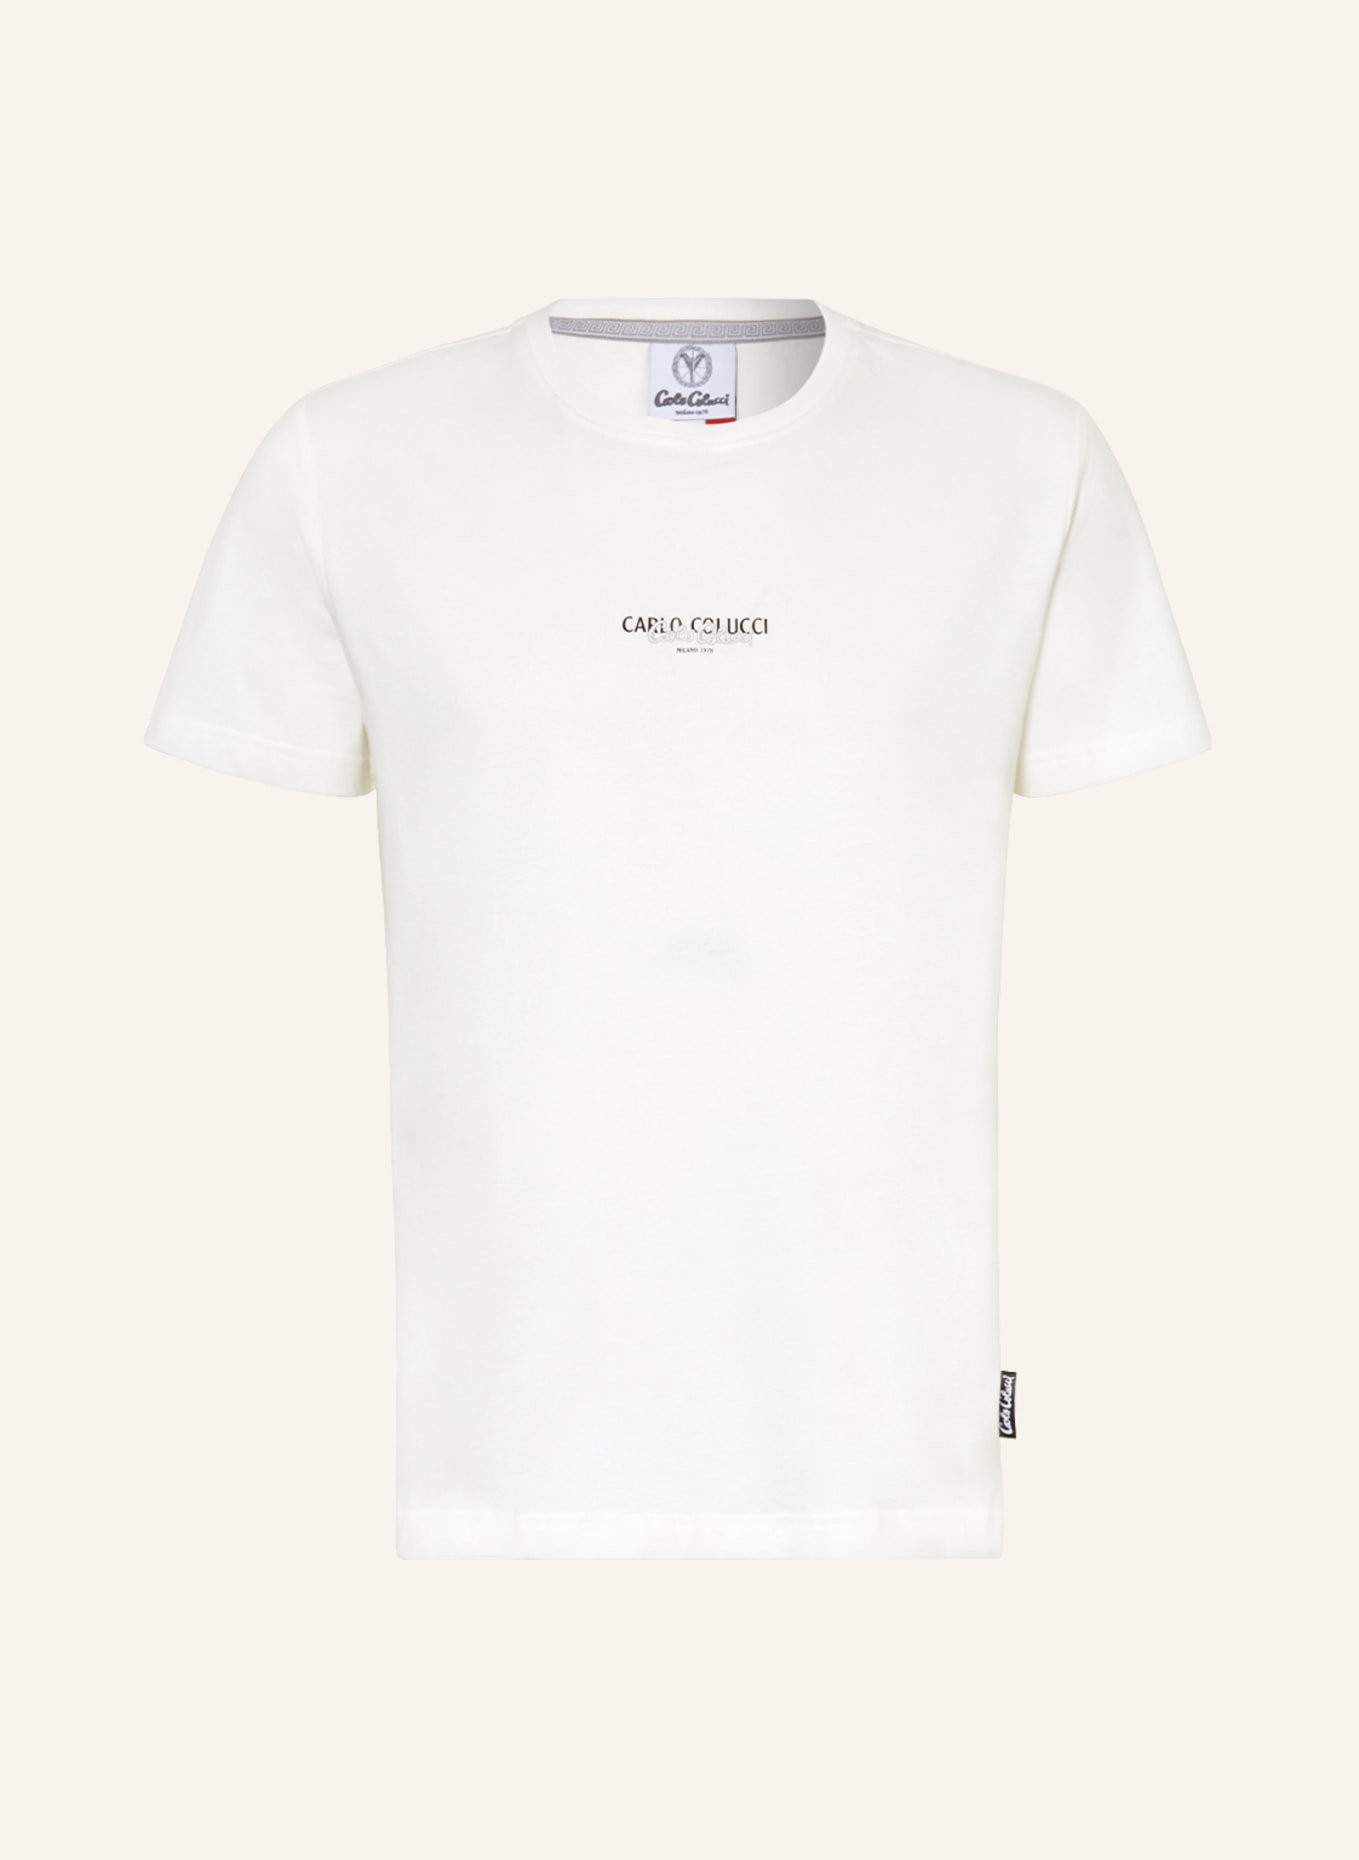 CARLO COLUCCI T-shirt, Color: CREAM (Image 1)